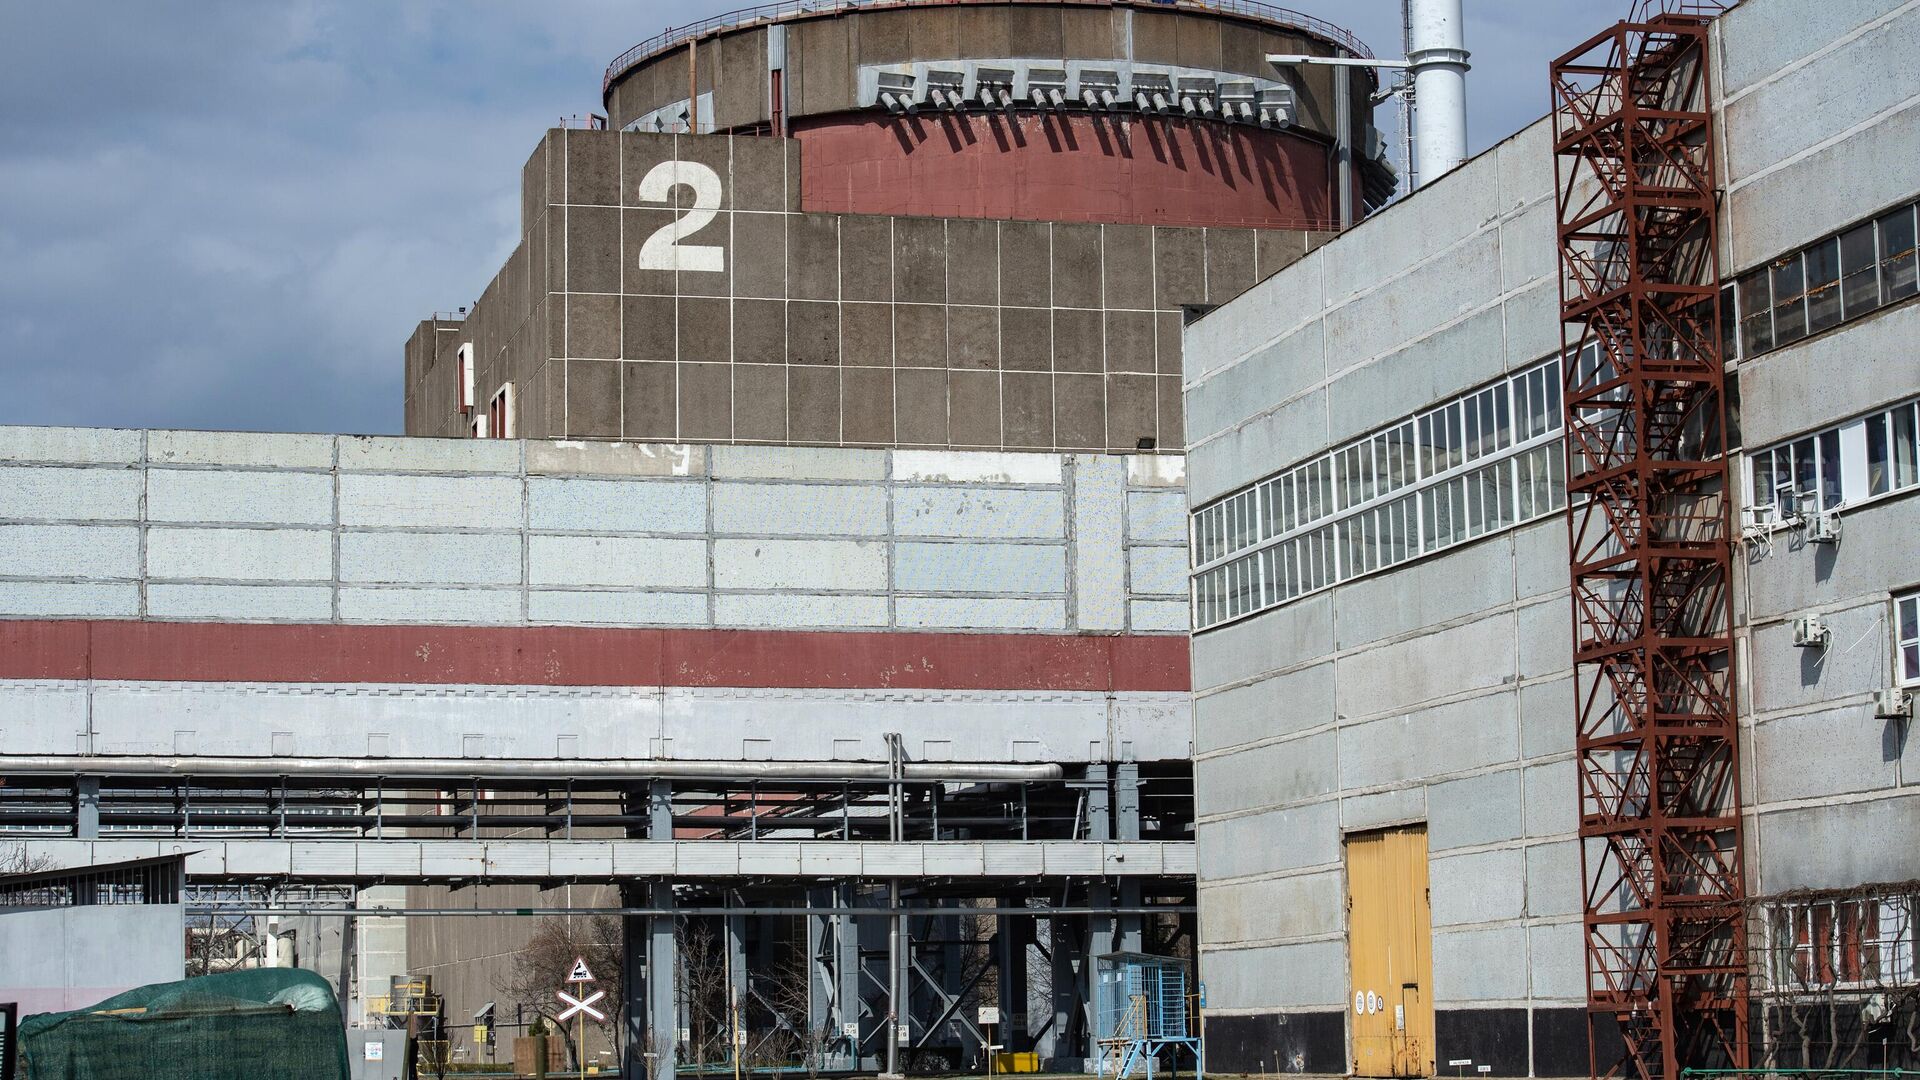 واحد برق شماره 2 نیروگاه زاپوریژیا در انرگودار - اسپوتنیک ایران  , 1920, 27.01.2023